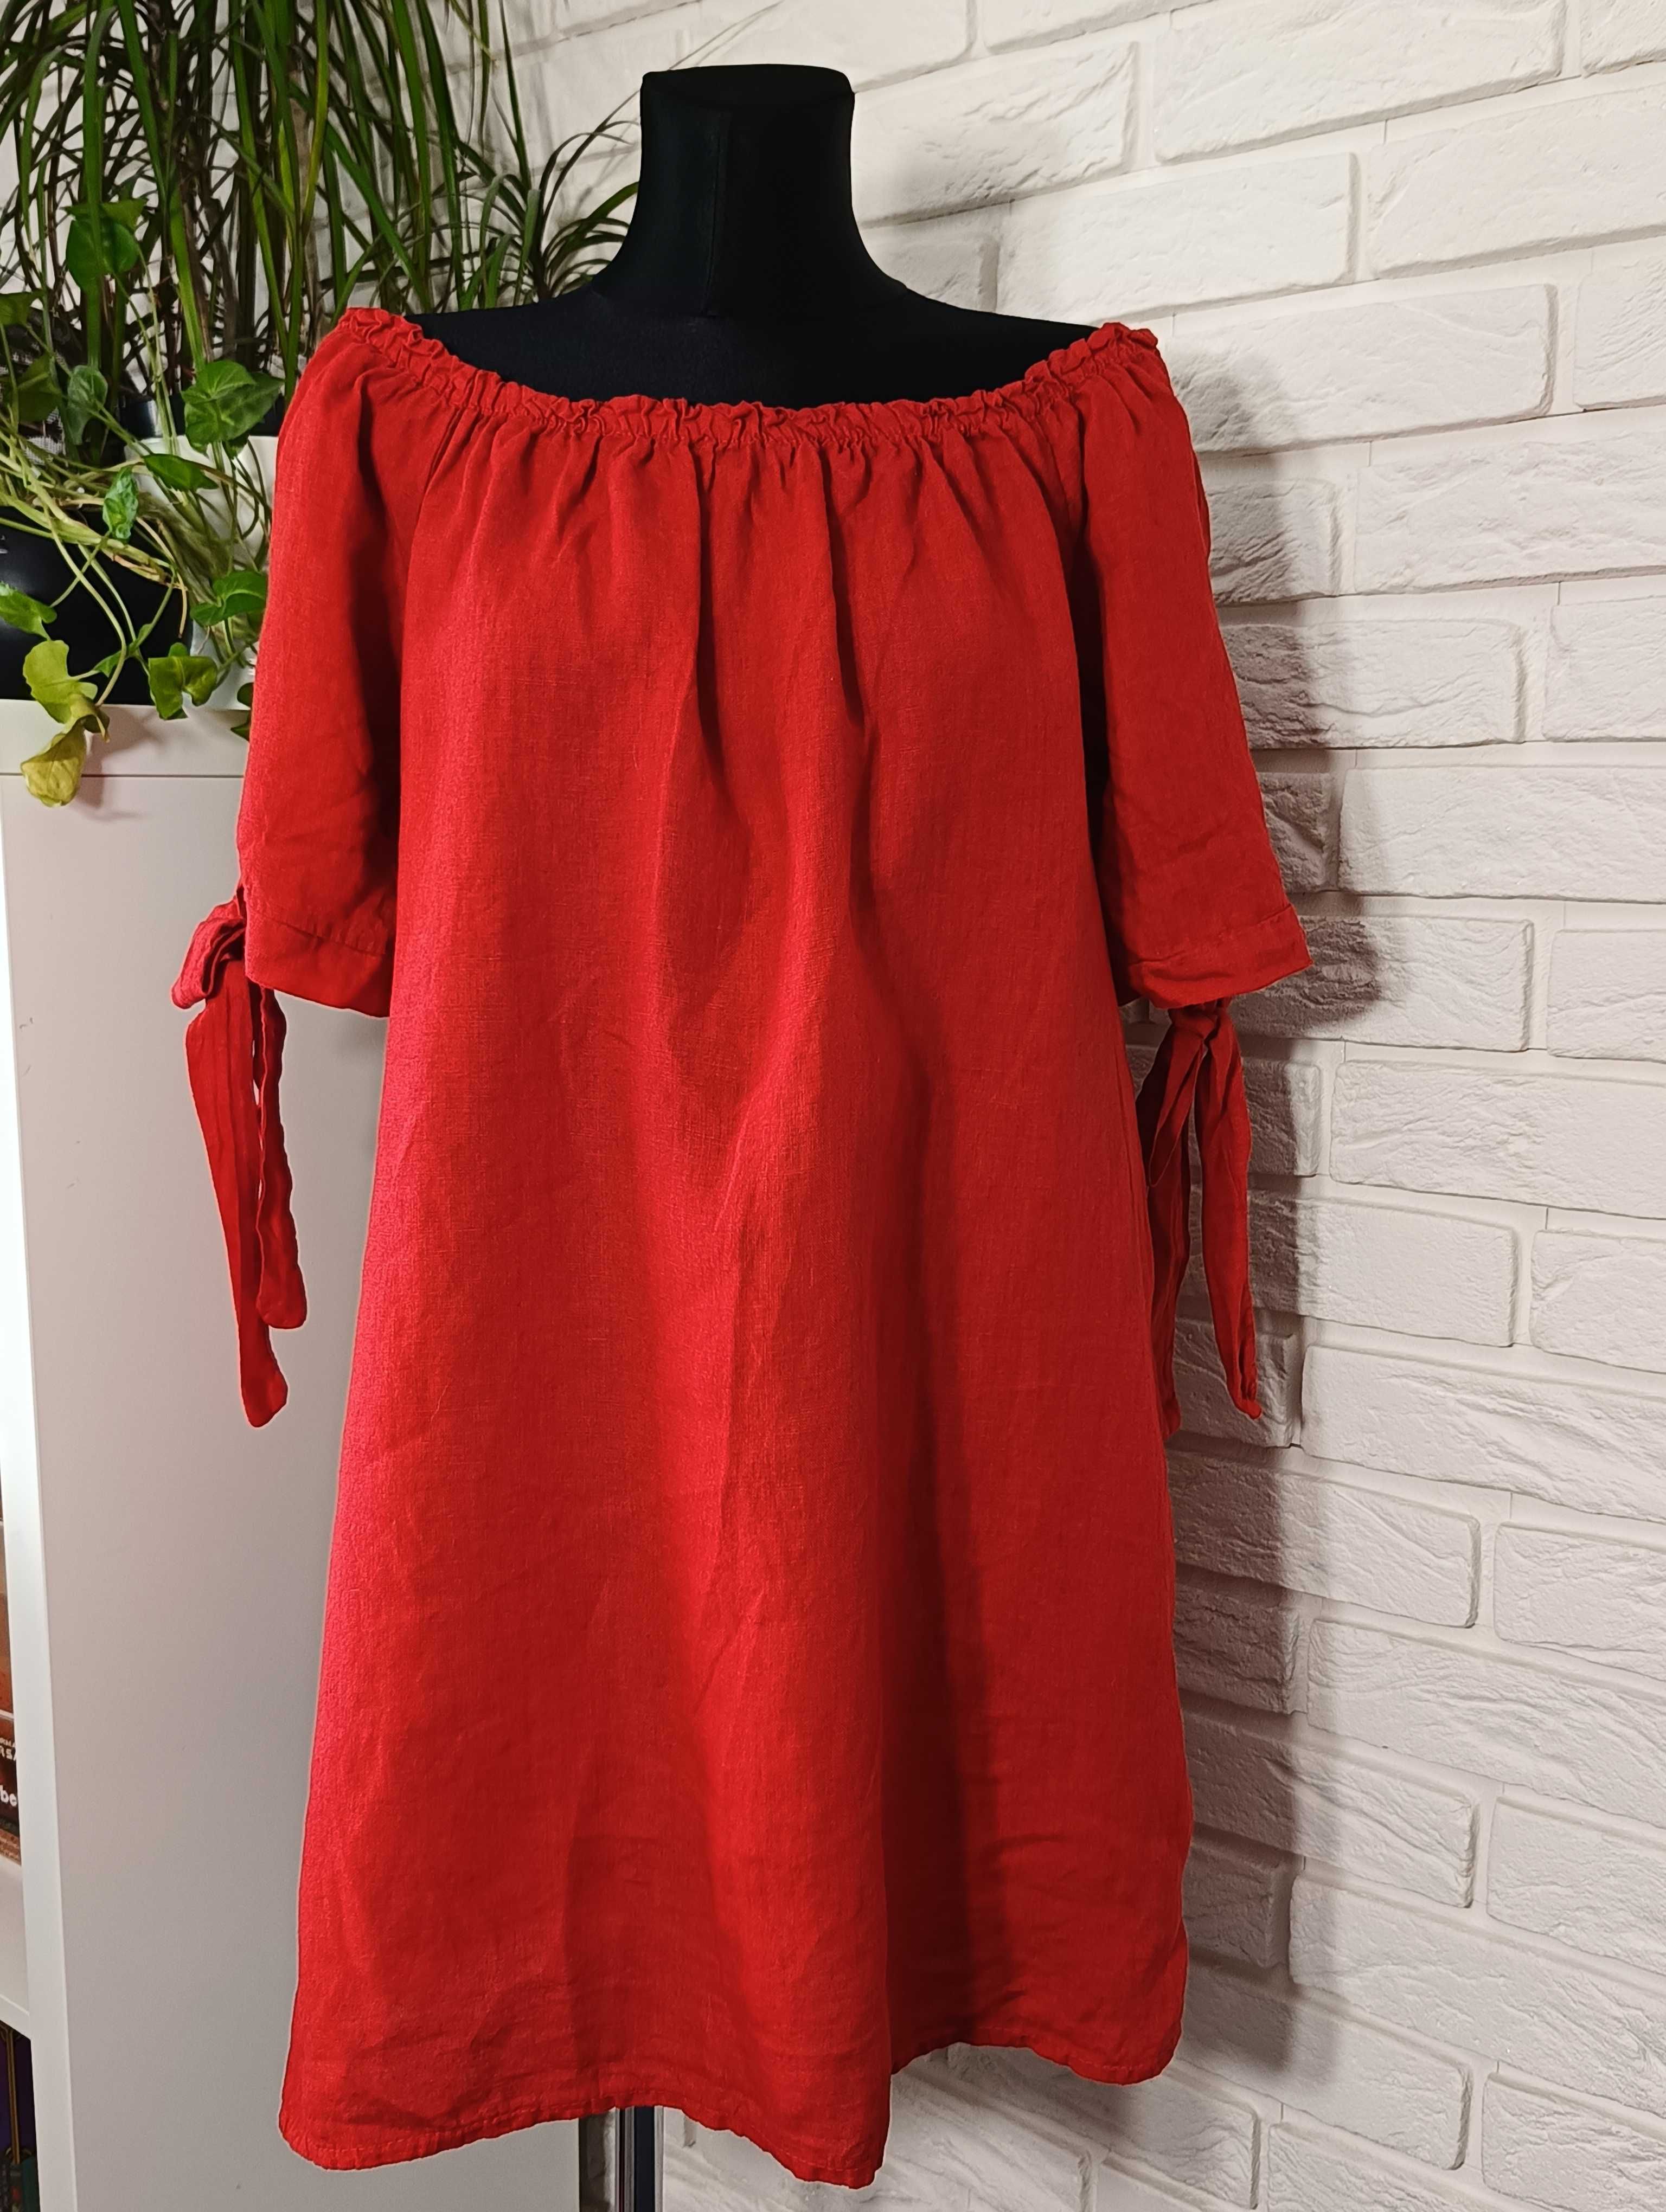 Made in Italy czerwona lniana sukienka hiszpanka 100% len jak nowa 38